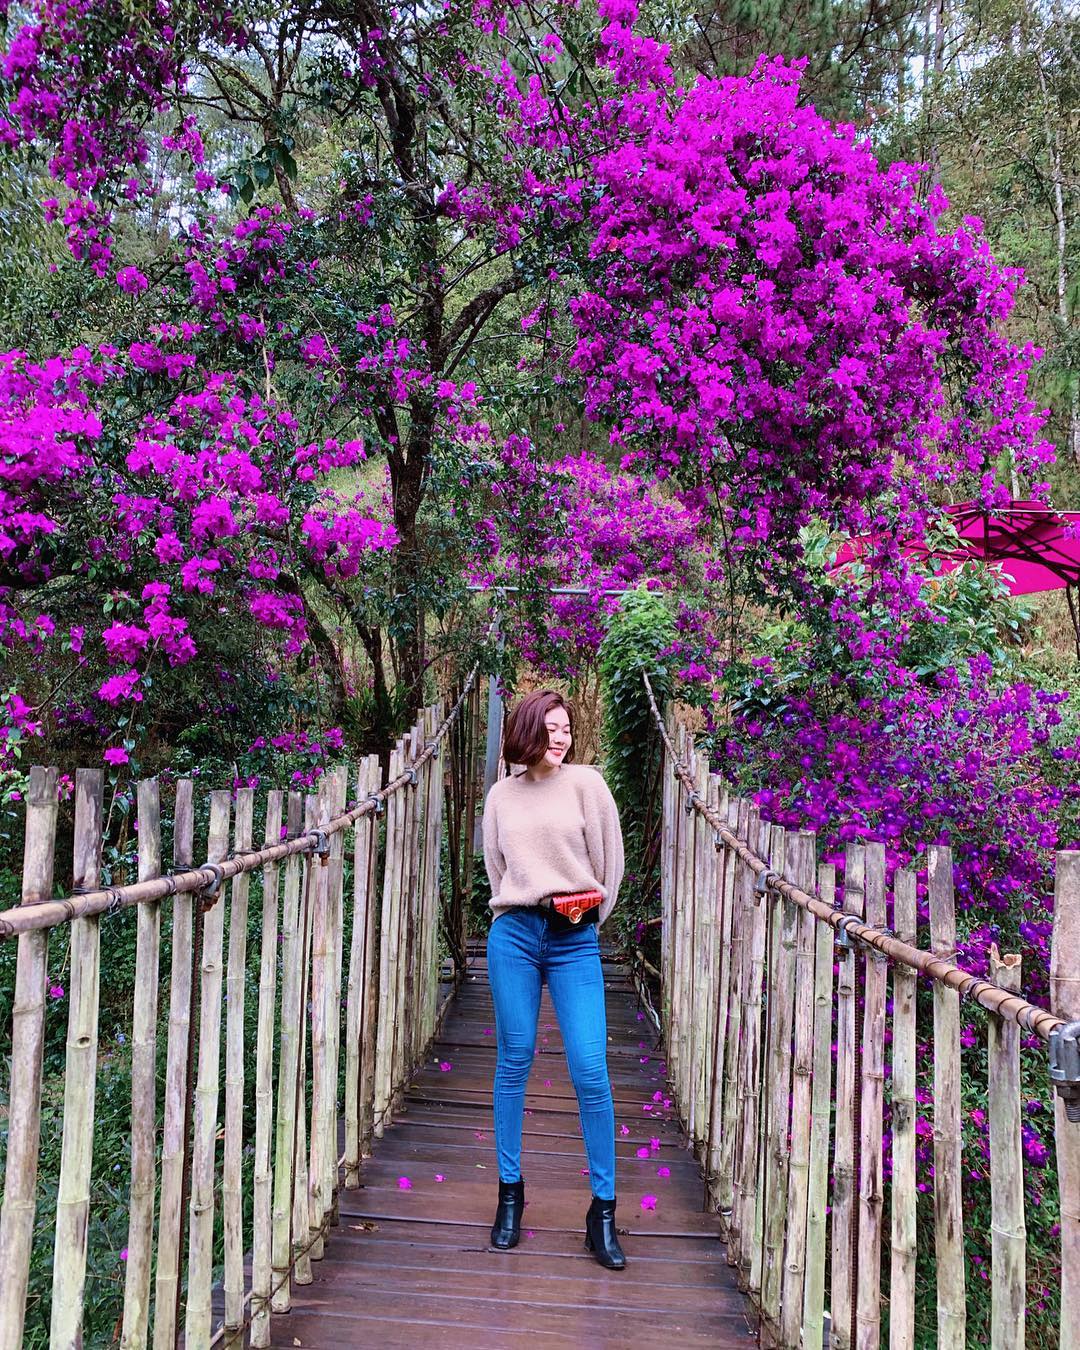 Cây cầu gỗ và dàn hoa màu tím là backroup chụp hình được nhiều du khách yêu thích 